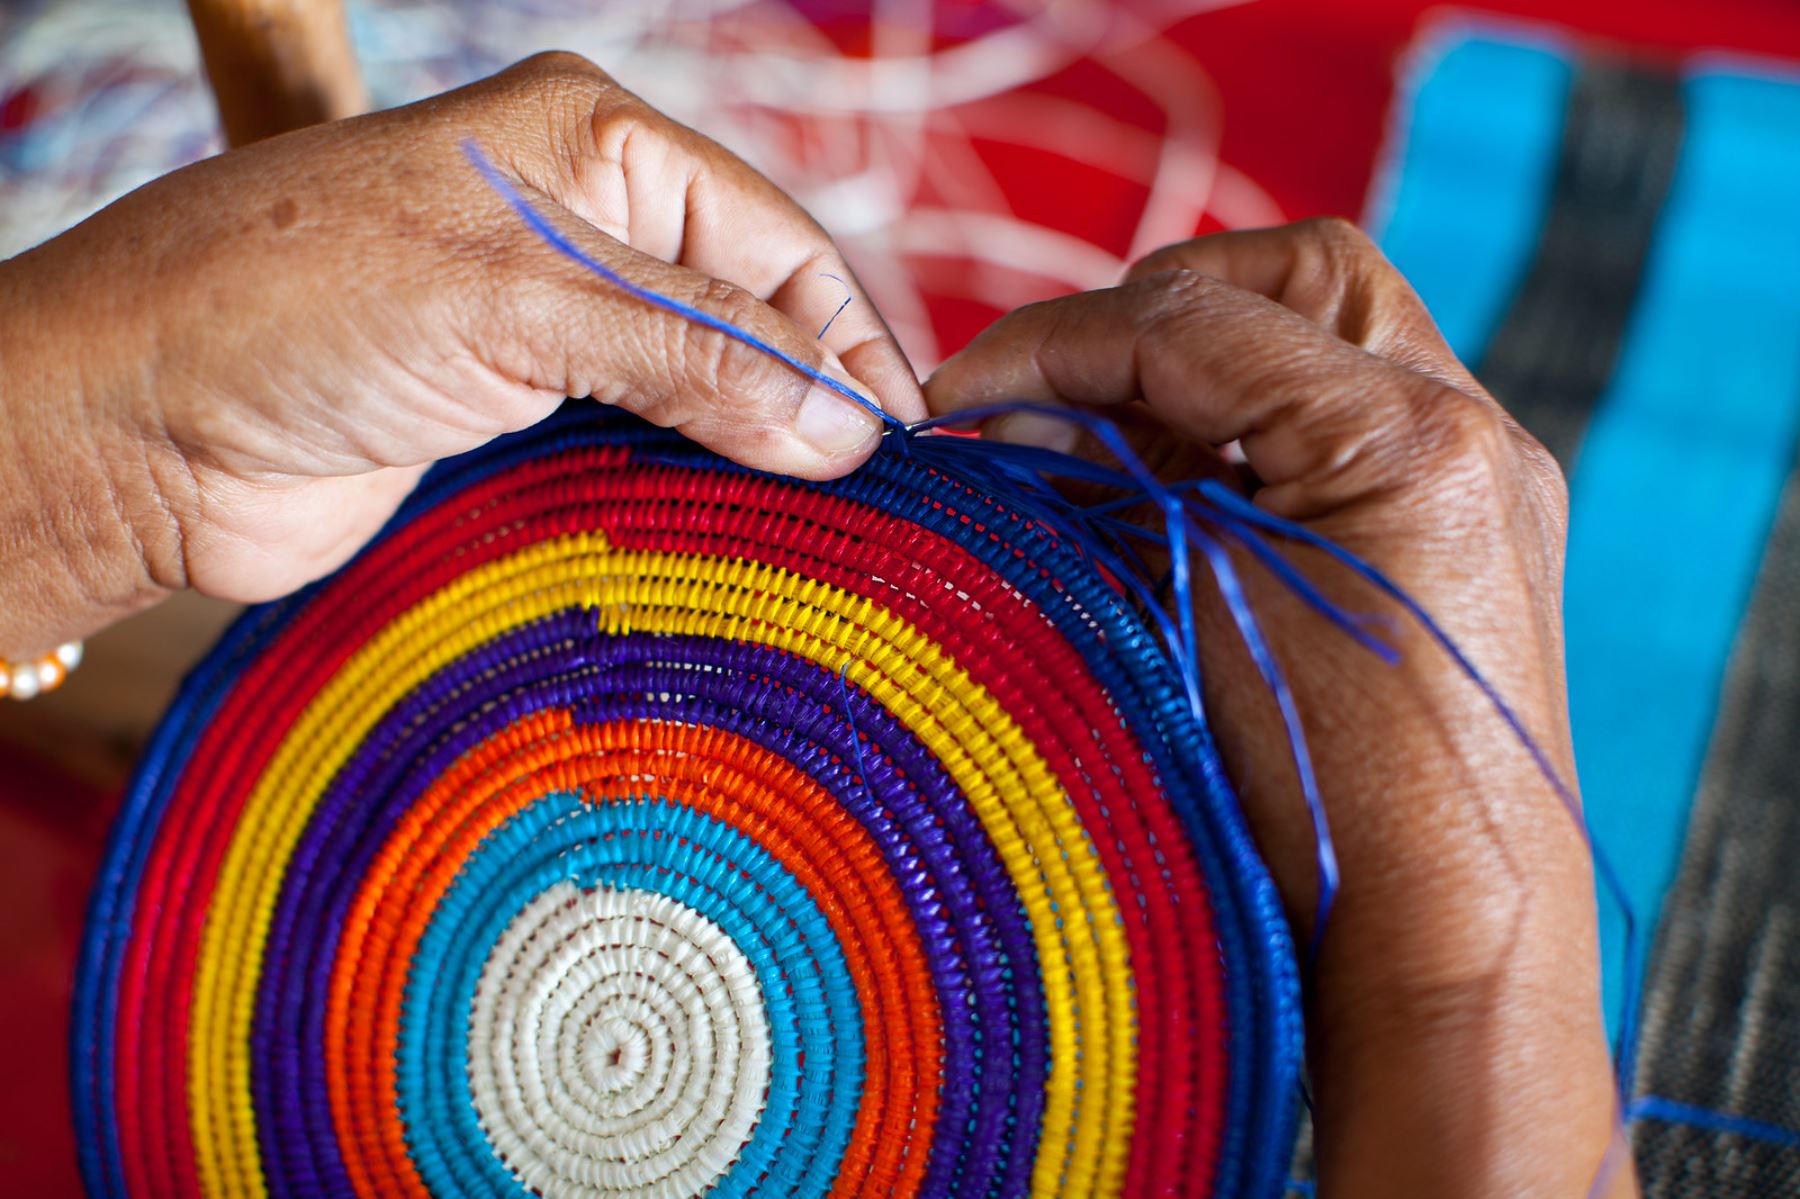 La feria De Nuestras Manos reunirá a 100 destacados artesanos del país. Entre ellos grandes amautas de la artesanía peruana. Foto: ANDINA/Mincetur